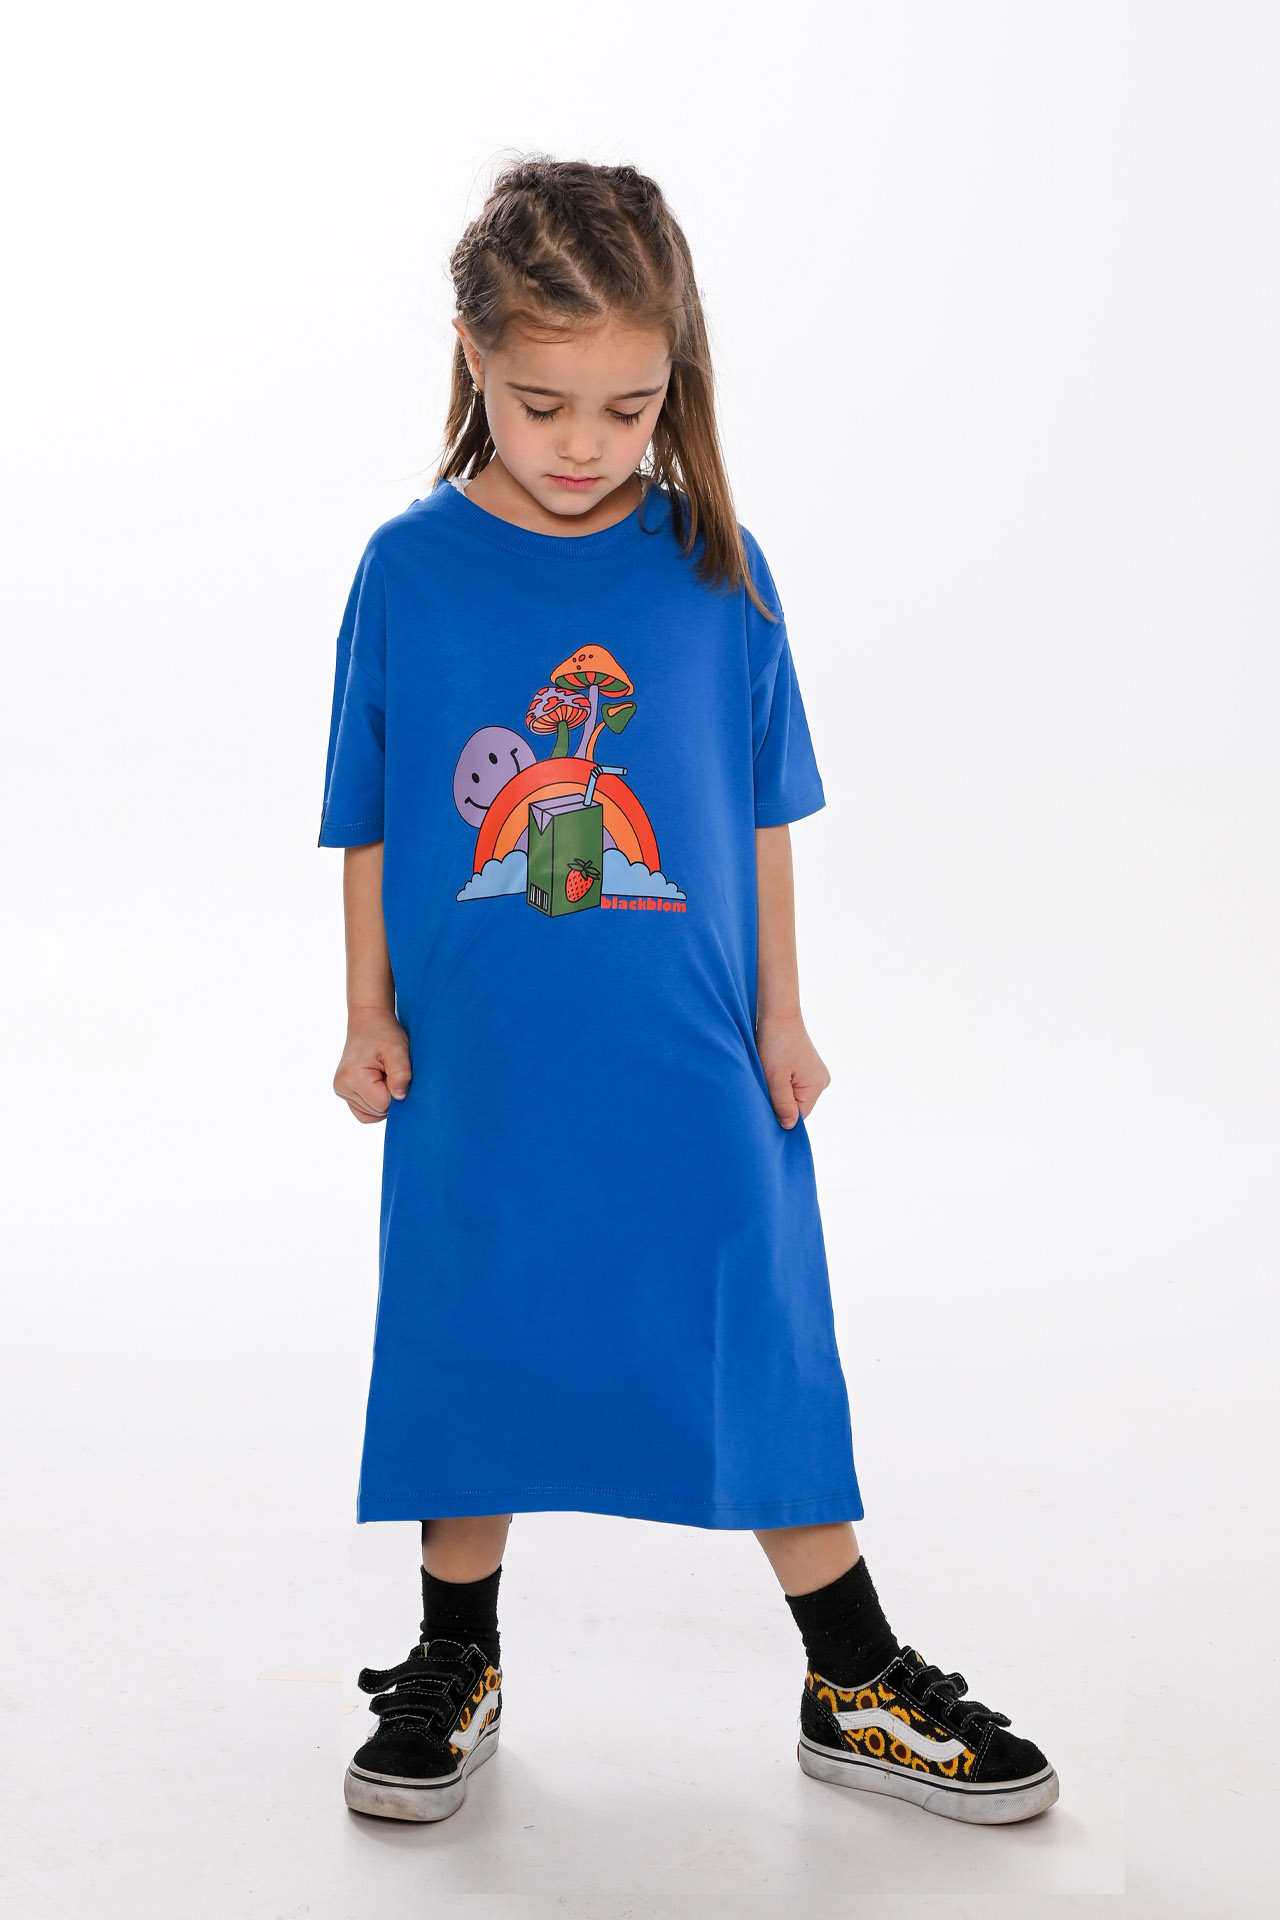 Blackblom Kids T-shirt Φόρεμα Μπλε